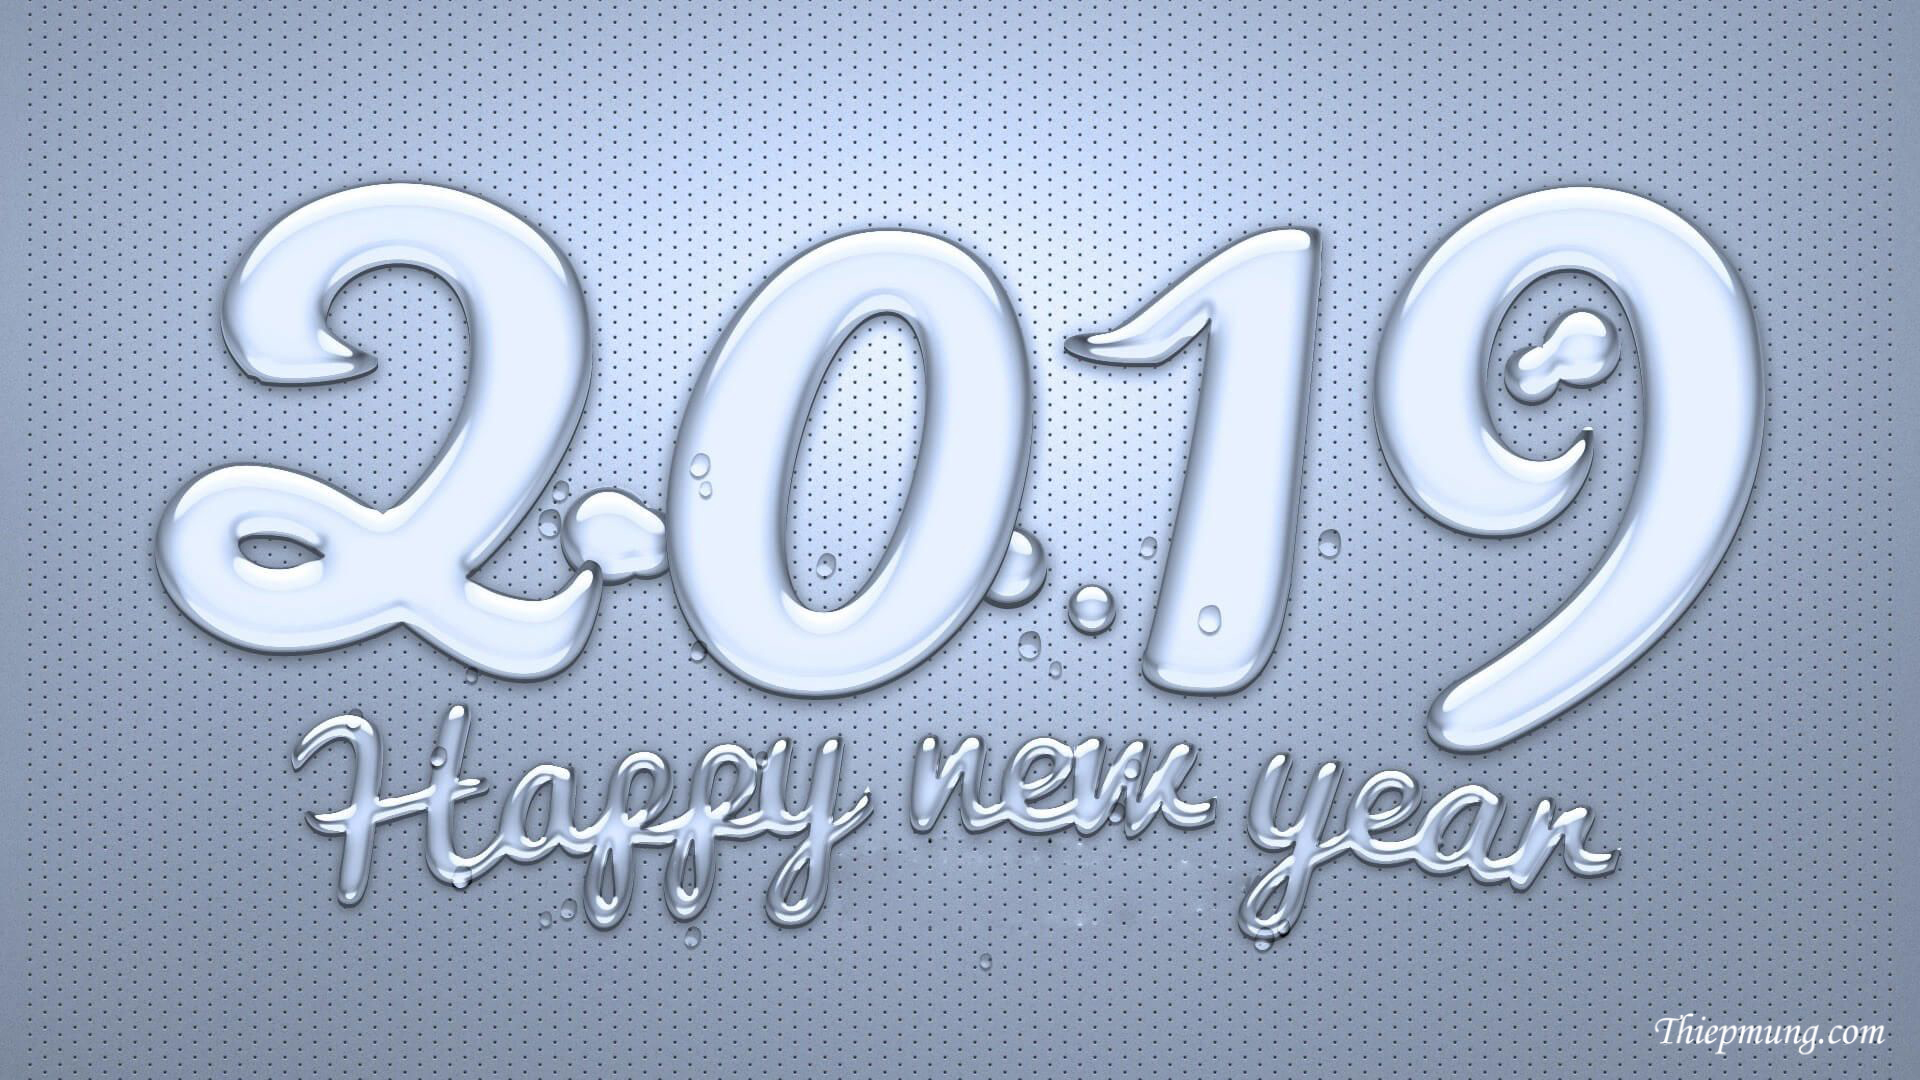 Thiệp mừng năm mới 2019 đẹp nhất - Hình 4